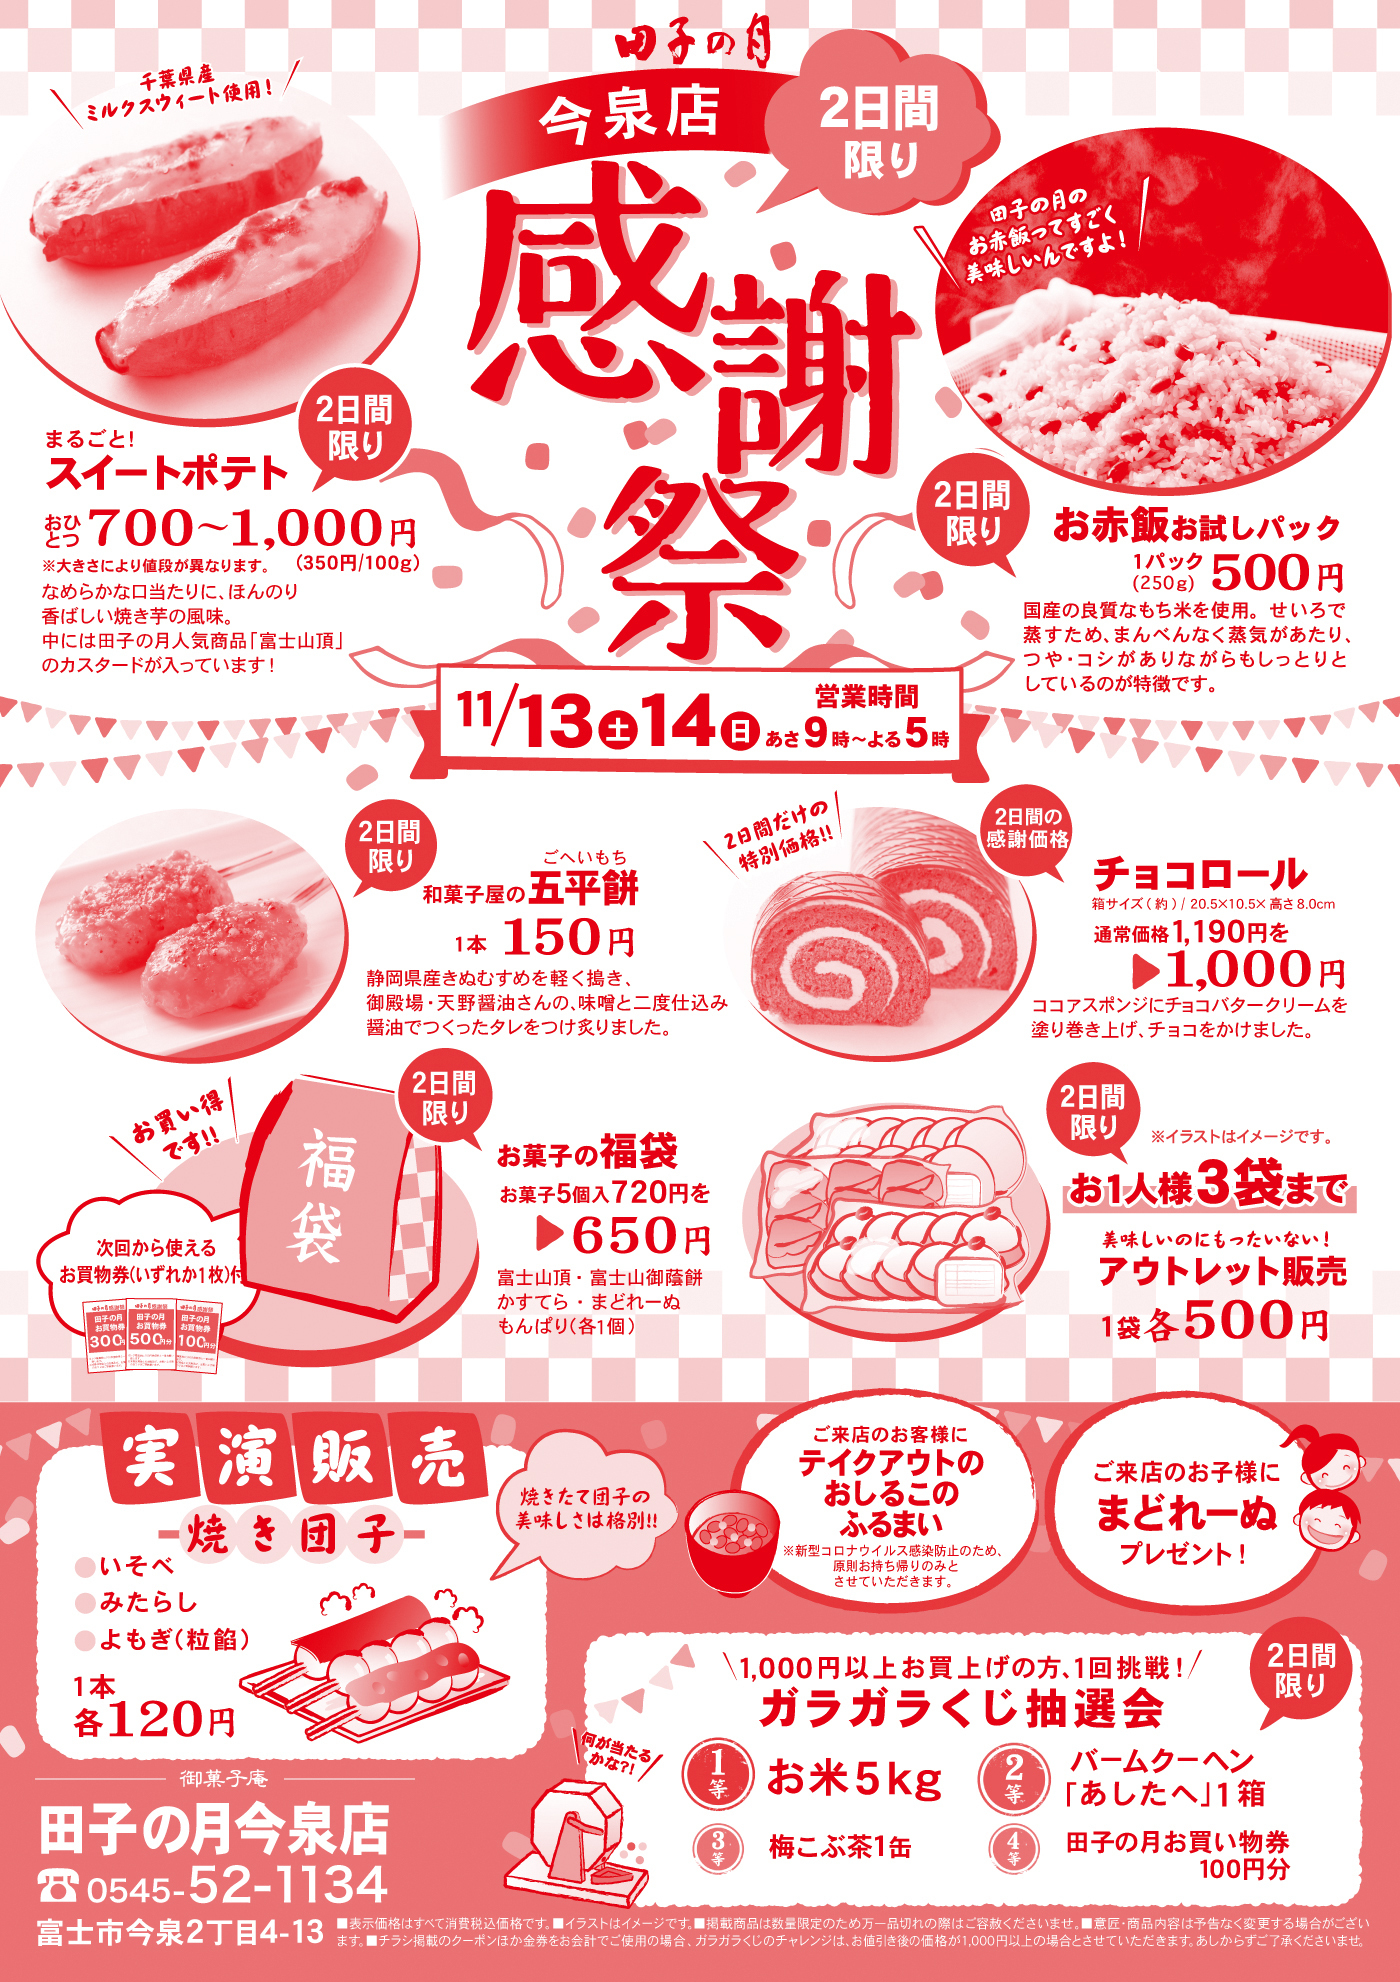 田子の月今泉店感謝祭2日間限り11/13土14日営業時間あさ9時～よる5時2日間限りまるごと！スイートポテトおひとつ700～1,000円※大きさにより値段が異なります。(350円/100g)＼千葉県産ミルクスウィート使用！／なめらかな口当たりに、ほんのり香ばしい焼き芋の風味。中には田子の月人気商品「富士山頂」のカスタードが入っています！2日間限りお赤飯お試しパック1パック(250g)500円国産の良質なもち米を使用。せいろで蒸すため、まんべんなく蒸気があたり、つや・コシがありながらもしっとりとしているのが特徴です。2日間限り和菓子屋の五平餅ごへいもち1本150円静岡県産きぬむすめを軽く搗き、御殿場・天野醤油さんの、味噌と二度仕込み醤油でつくったタレをつけ炙りました。2日間の感謝価格チョコロール箱サイズ(約)/20.5×10.5×高さ8.0cm通常価格1,190円を▶1,000円＼2日間だけの特別価格‼／ココアスポンジにチョコバタークリームを塗り巻き上げ、チョコをかけました。2日間限りお菓子の福袋お菓子5個入720円を▶650円富士山頂・富士山御蔭餅かすてら・まどれーぬもんぱり(各1個)＼お買い得です‼／次回から使えるお買物券(いずれか1枚付)2日間限りお1人様3袋まで美味しいのにもったいない！アウトレット販売1袋各500円※イラストはイメージです。実演販売焼き団子●いそべ●みたらし●よもぎ(粒餡)1本各120円焼きたて団子の美味しさは格別‼ご来店のお客様にテイクアウトのおしるこのふるまい※新型コロナウイルス感染防止のため、原則お持ち帰りのみとさせていただきます。ご来店のお子様にまどれーぬプレゼント！＼1,000円以上お買い上げの方、1回挑戦！／ガラガラくじ抽選会2日間限り＼何が当たるかな？！／1等お米5kg2等バームクーヘン「あしたへ」1箱3等梅こぶ茶1缶4等田子の月お買い物券100円分御菓子庵田子の月今泉店☏0545-52-1134富士市今泉2丁目4-13■表示価格は全て消費税込価格です。■イラストはイメージです。■掲載商品は数量限定のため万一品切れの際はご容赦くださいませ。■意匠・商品内容は予告なく変更する場合がございます。■チラシ掲載のクーポンほか金券をお会計でご使用の場合、ガラガラくじのチャレンジは、お値引き後の価格が1,000円以上の場合とさせていただきます。あしからずご了承くださいませ。